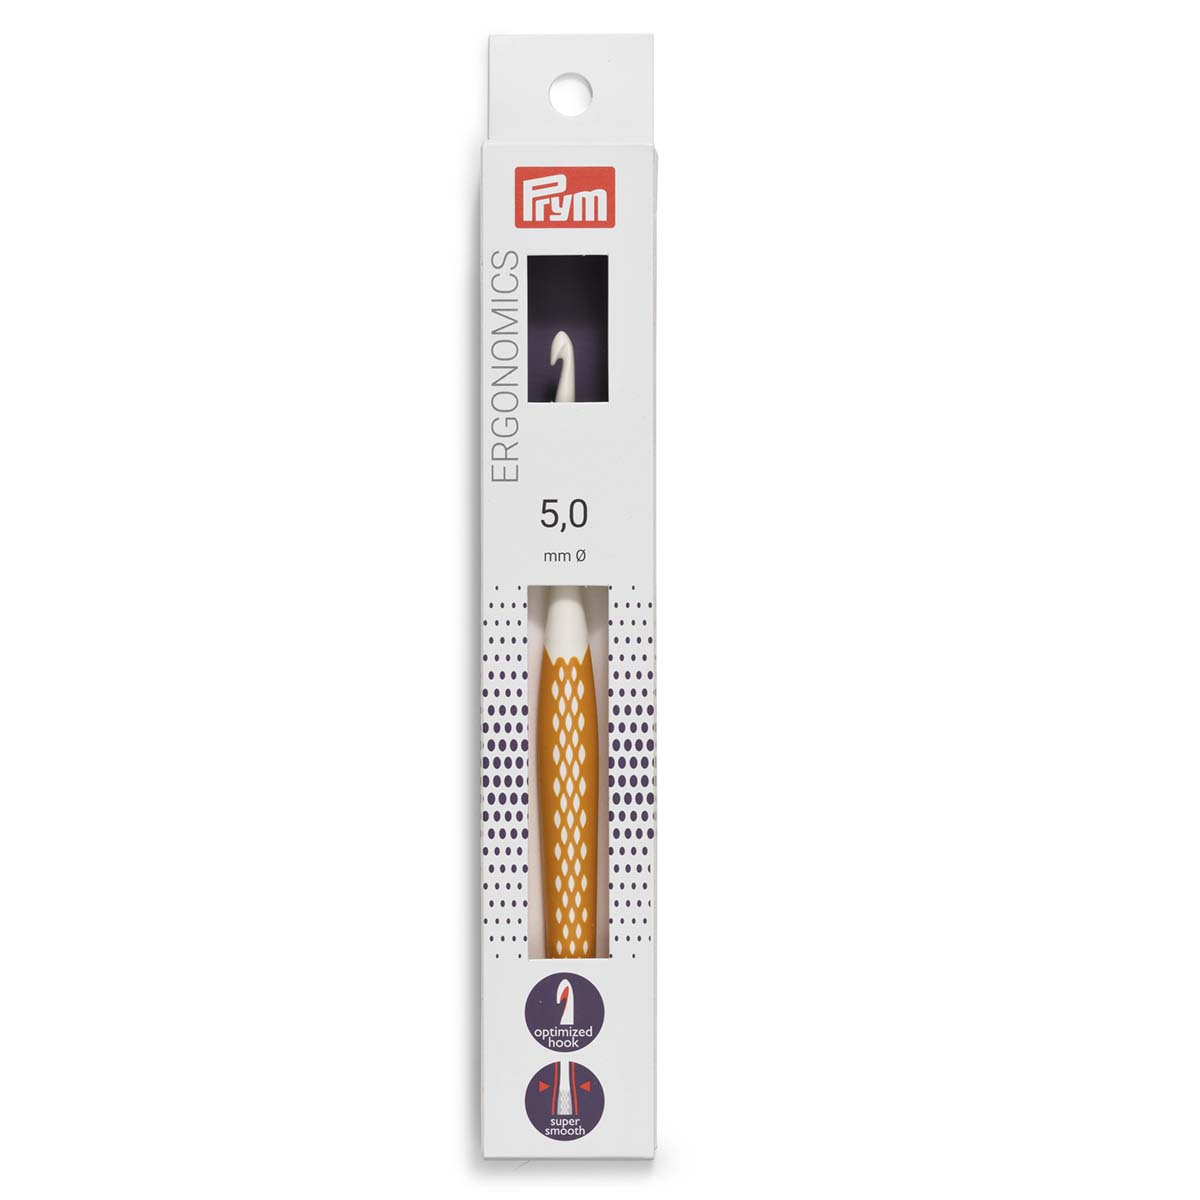 Крючок для вязания Prym эргономичный с прорезиненной ручкой удобный легкий 5 мм 16 см Ergonomics 218487 - фото 8